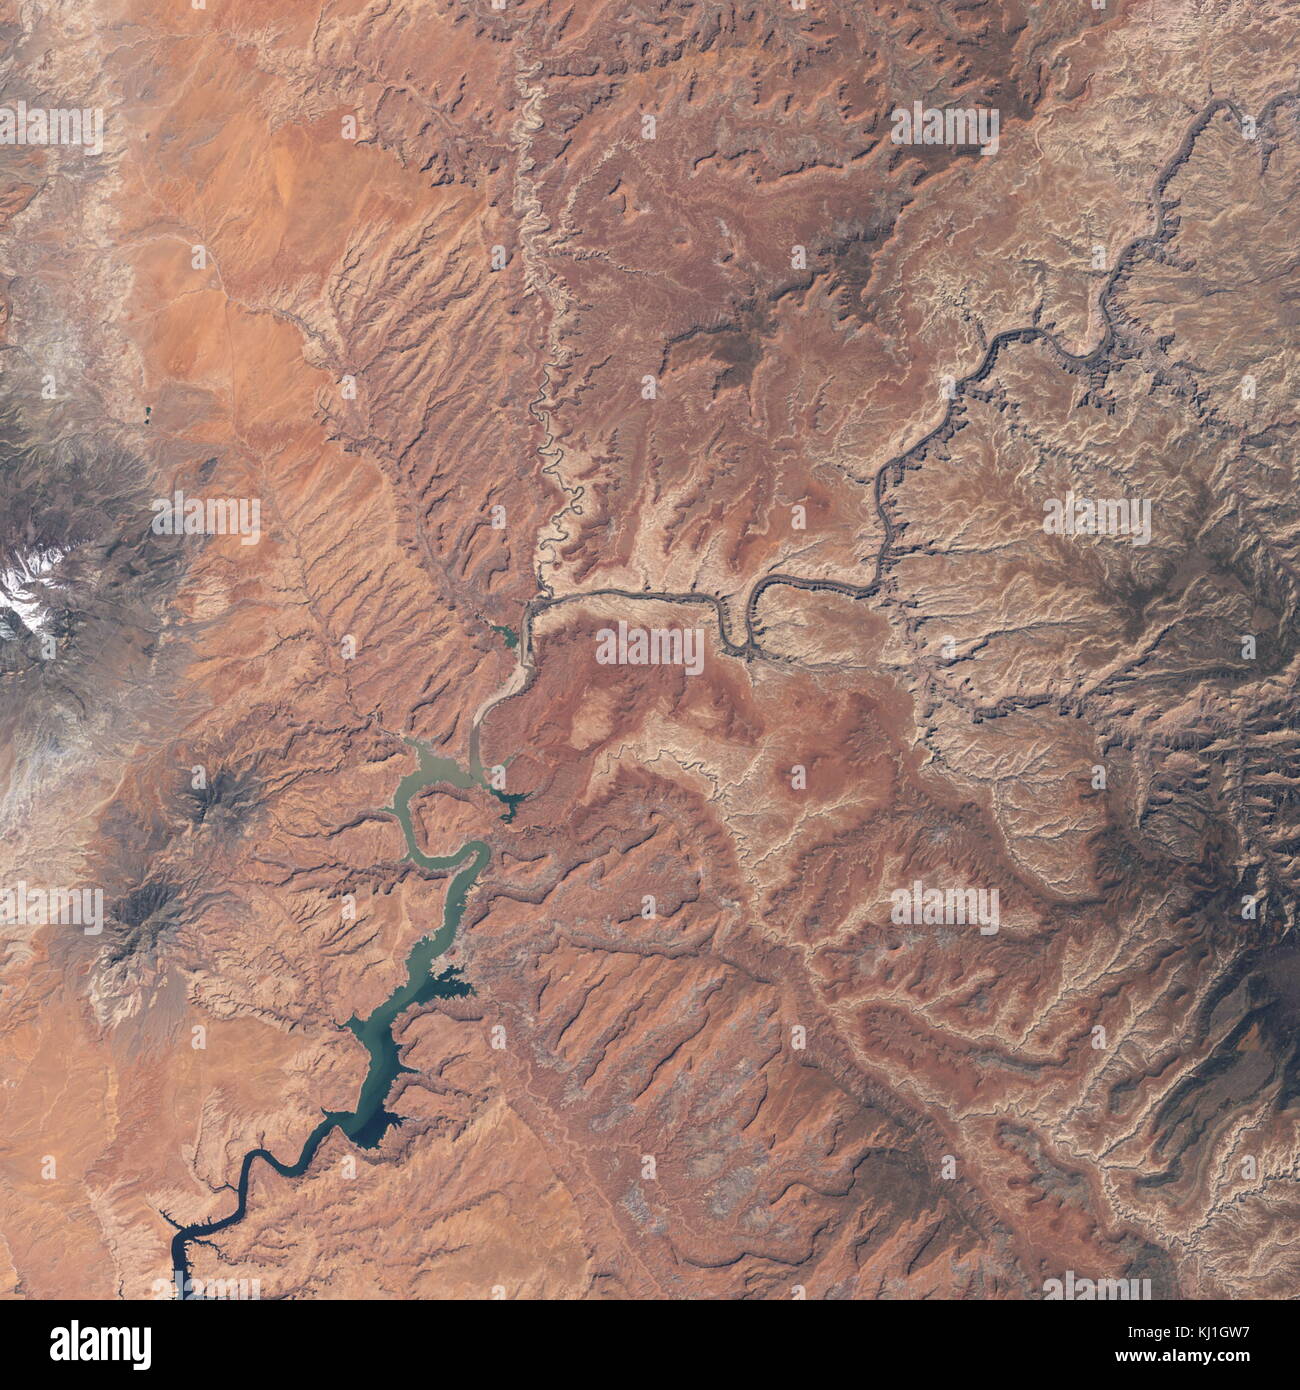 Lake Powell, est un réservoir sur la rivière Colorado, chevauchant la frontière entre l'Utah et l'Arizona (la plupart d'elle, avec pont en arc-en-ciel, est dans l'Utah). C'est le deuxième plus grand réservoir de capacité maximale de l'eau aux États-Unis derrière le Lac Mead. Image satellite, prises en 2008 Banque D'Images